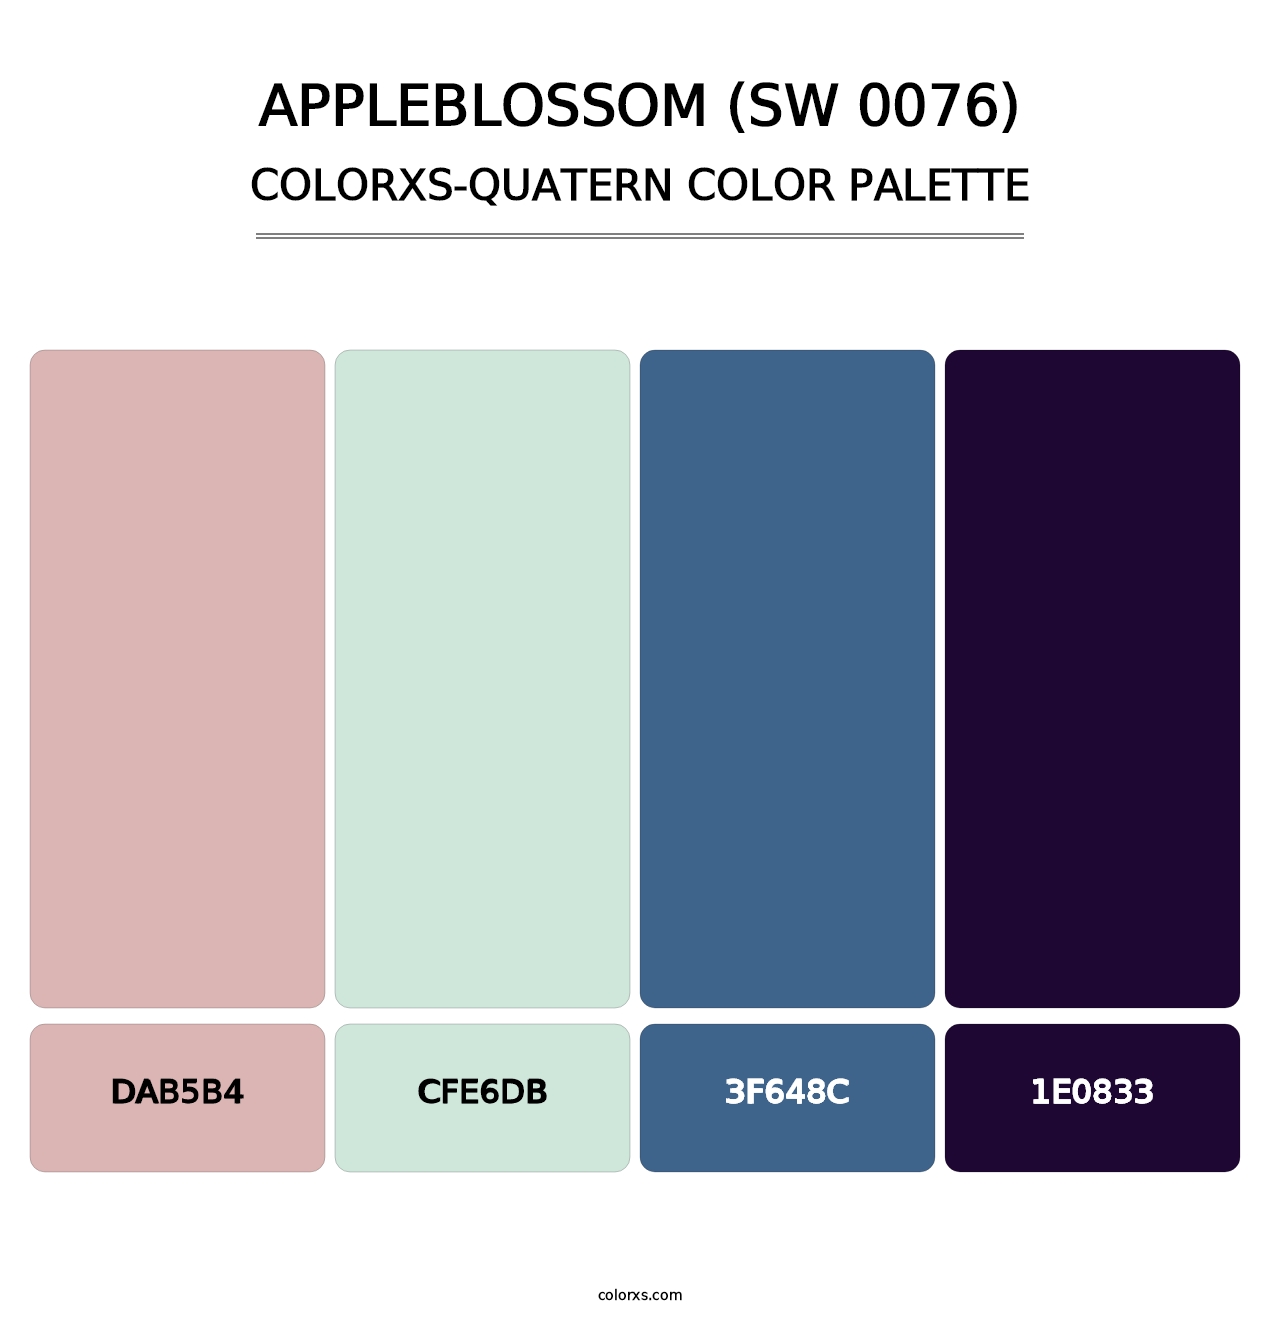 Appleblossom (SW 0076) - Colorxs Quatern Palette